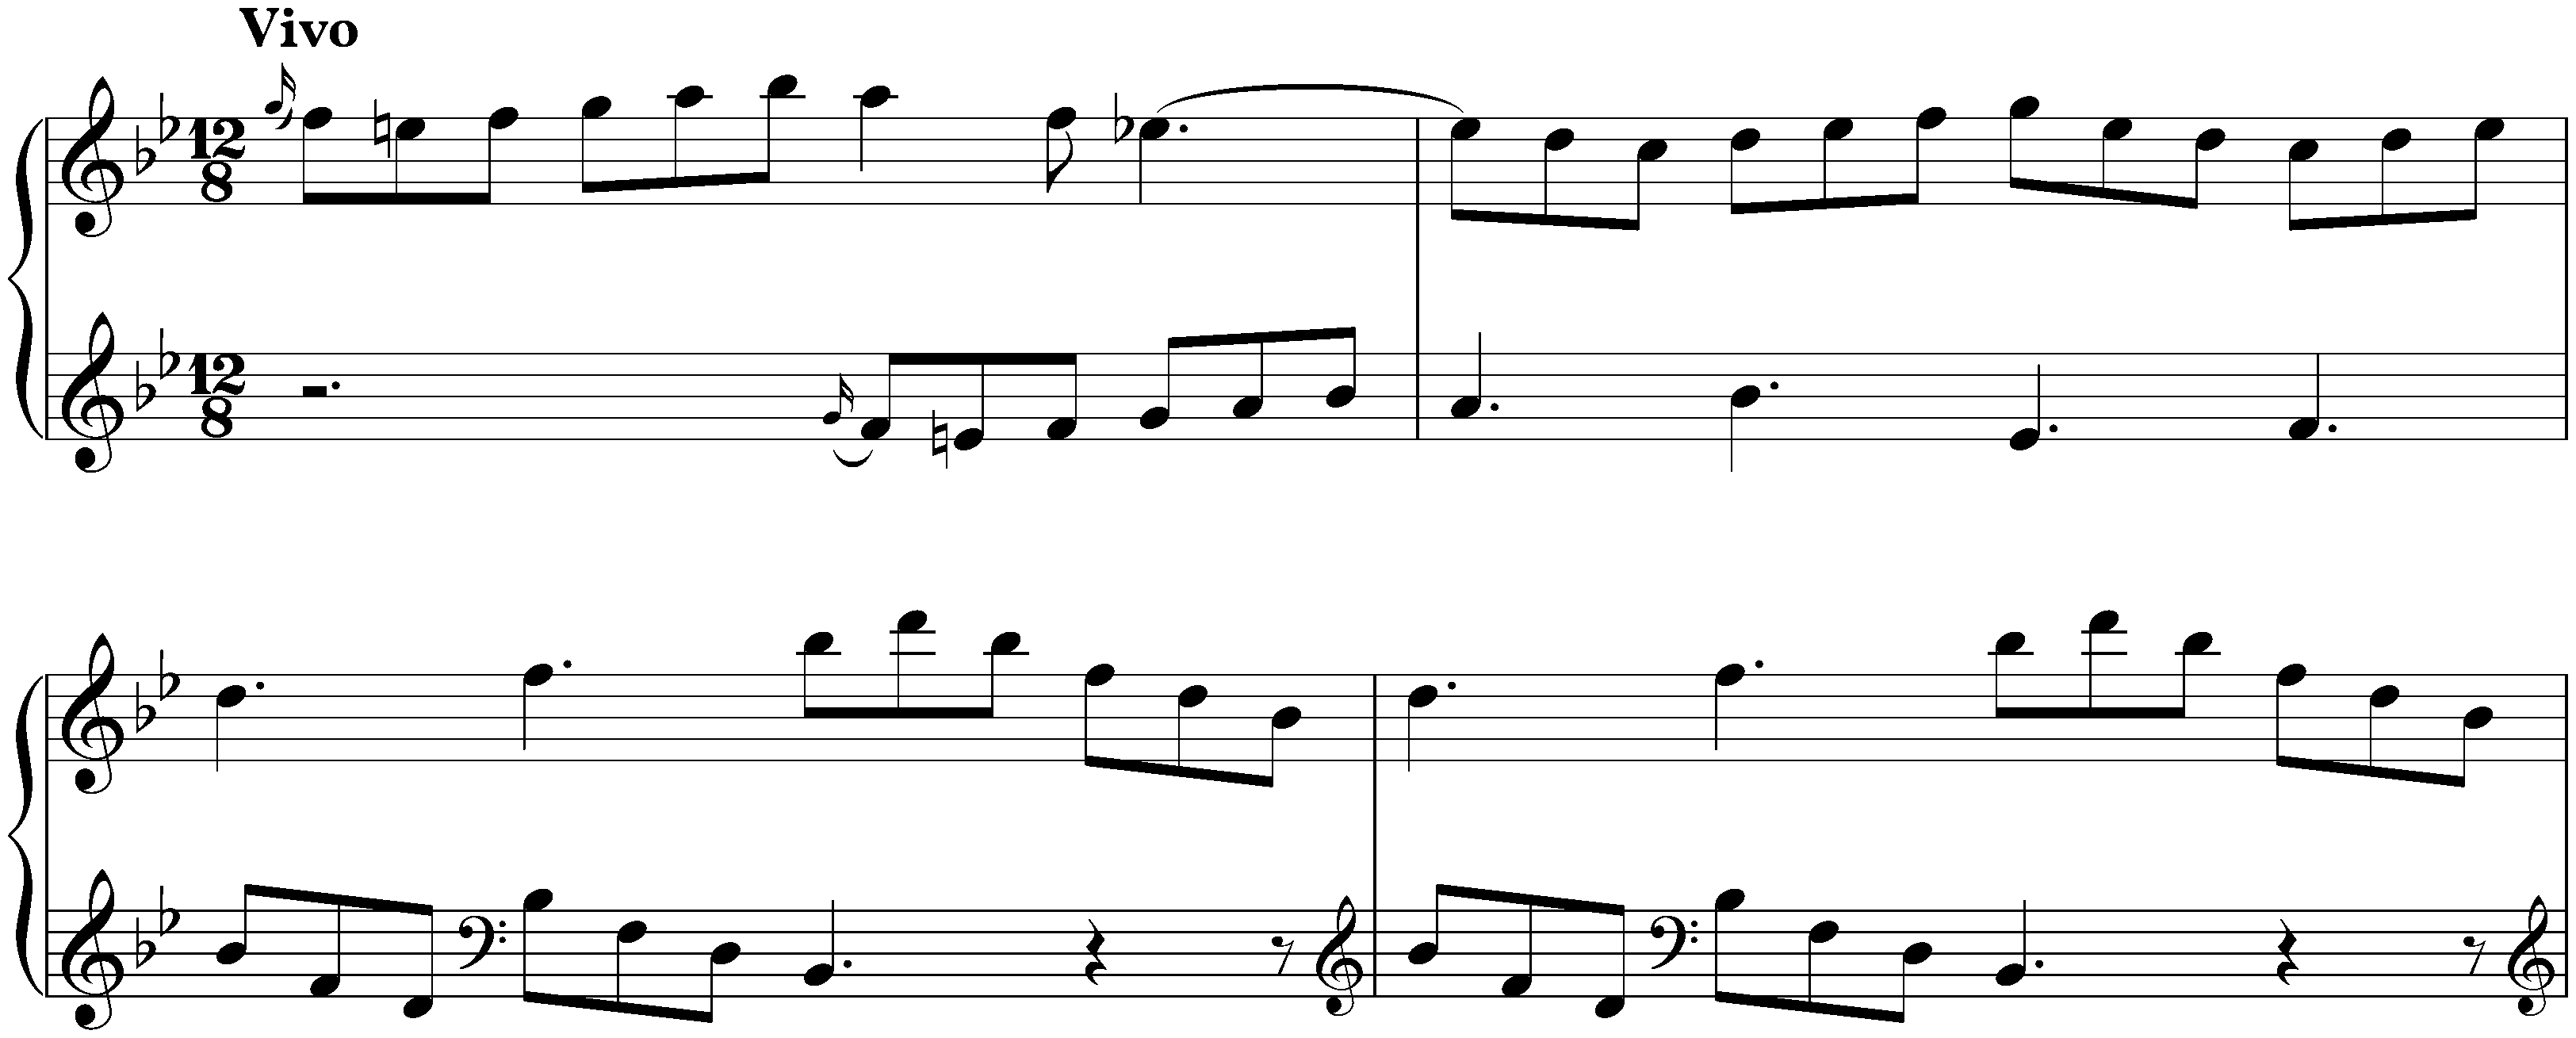 Sonata in B-flat major, K. 190